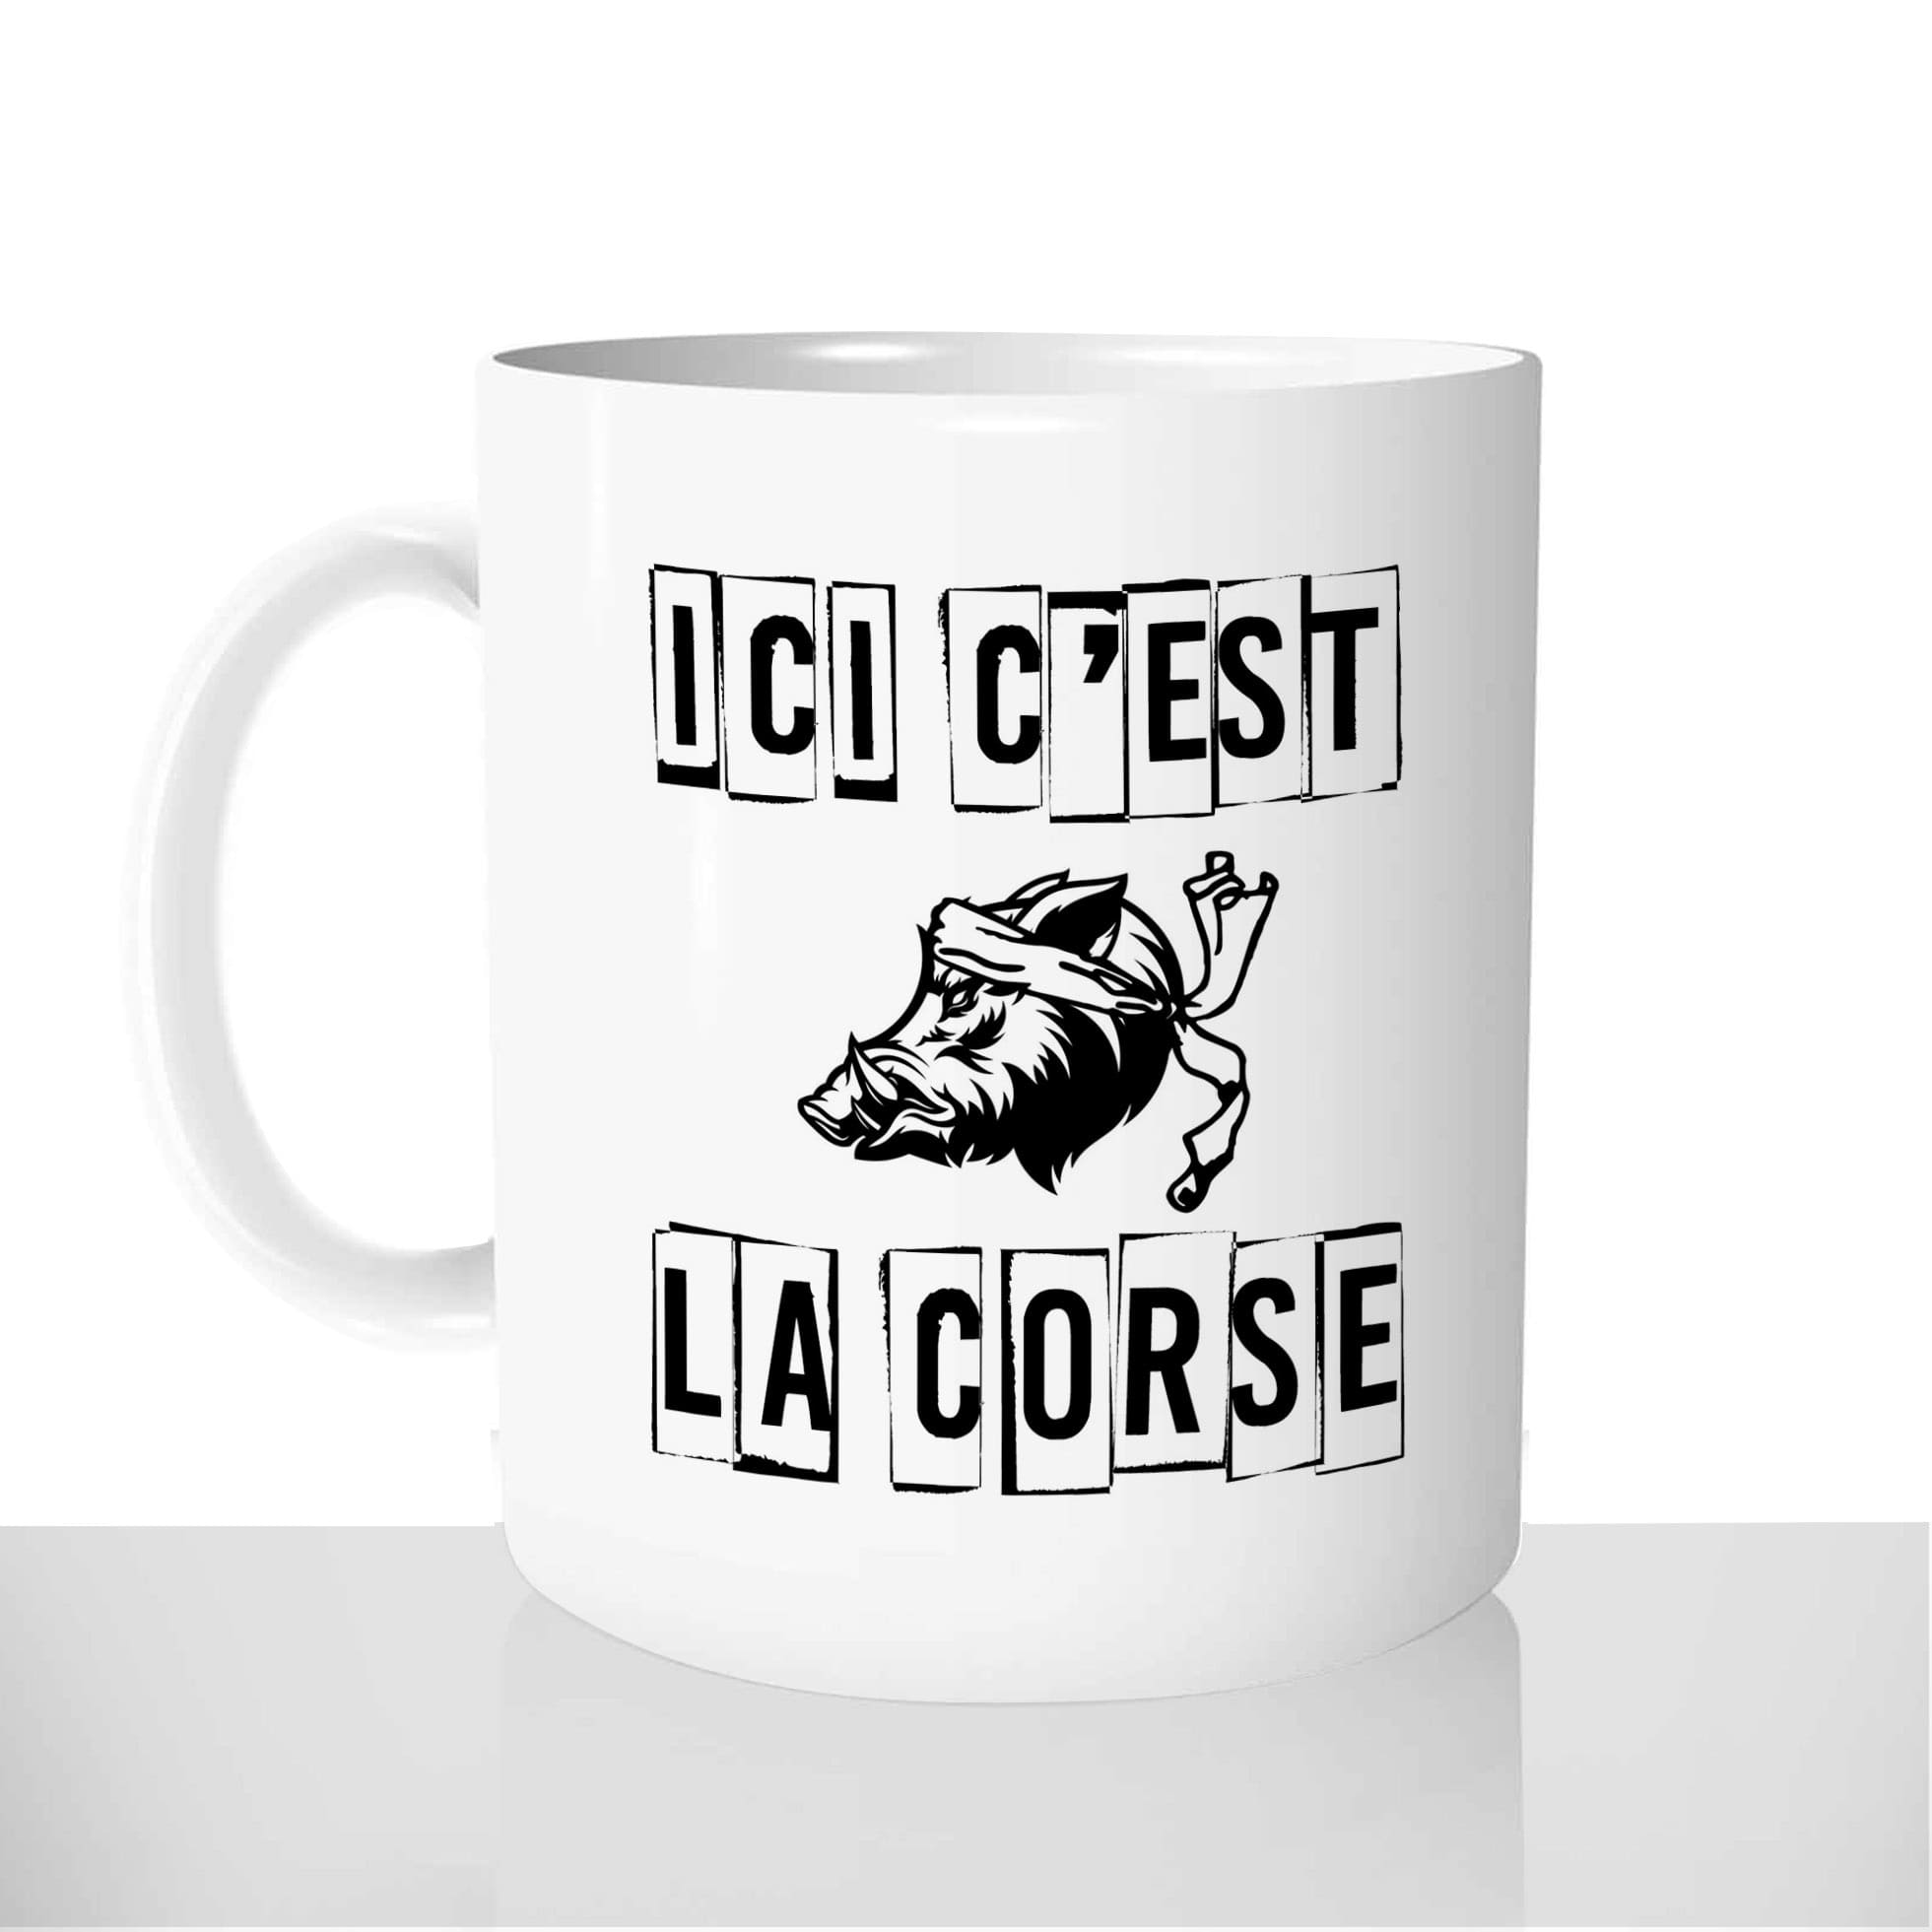 mug-blanc-céramique-11oz-france-mugs-surprise-pas-cher-ici-cest-la-corse-sanglier-corsica-figatelli